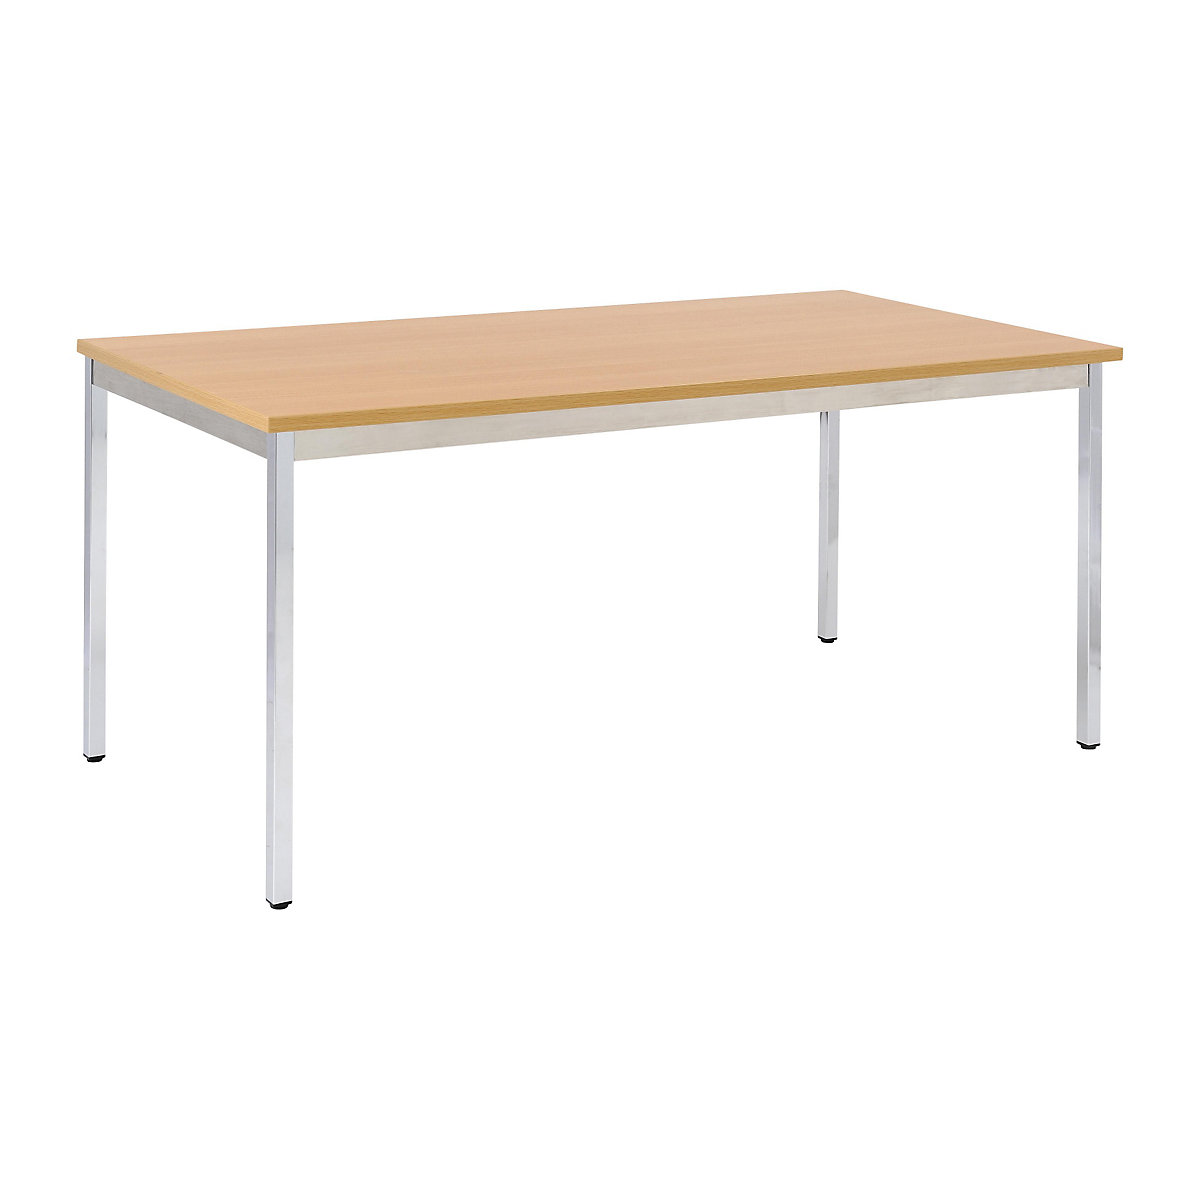 Table polyvalente – eurokraft basic, rectangulaire, l x h 1200 x 740 mm, profondeur 600 mm, plateau façon hêtre, piétement chromé-16